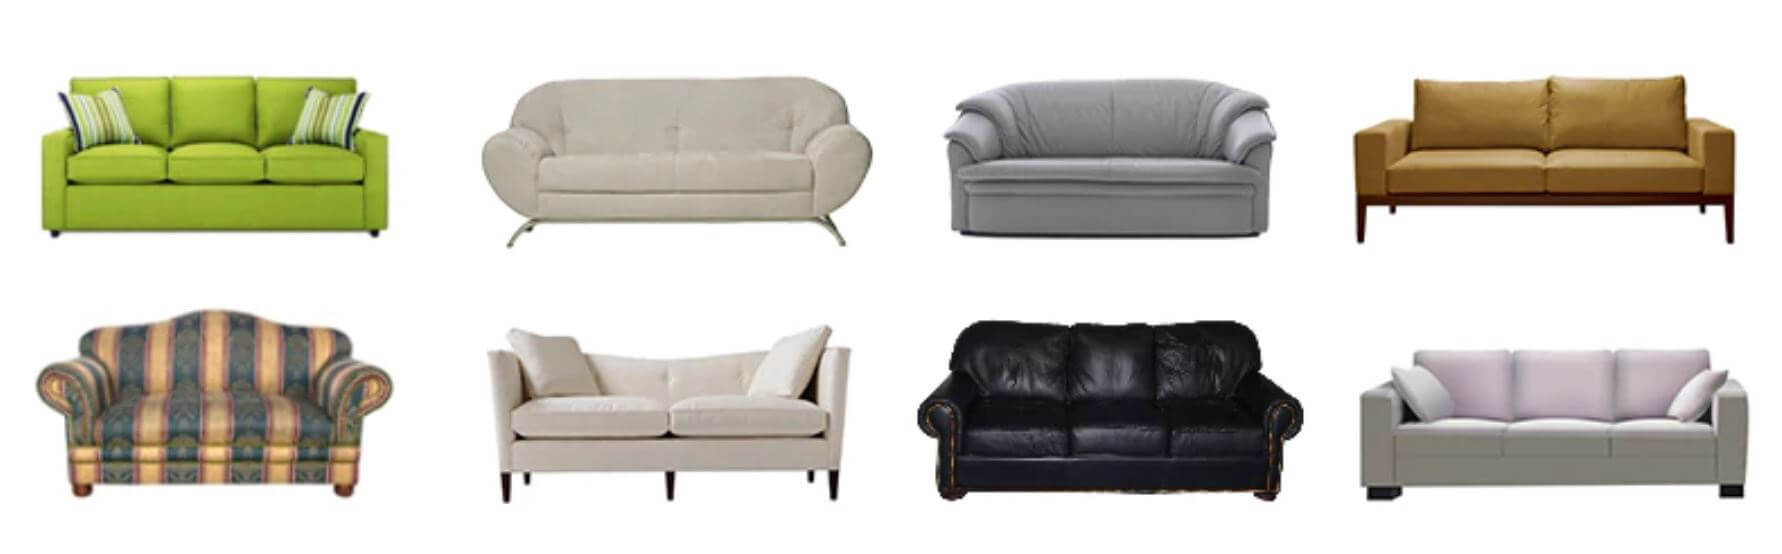 Modelos y tipos de sofás compatibles con nuestro cubre sofá extensible